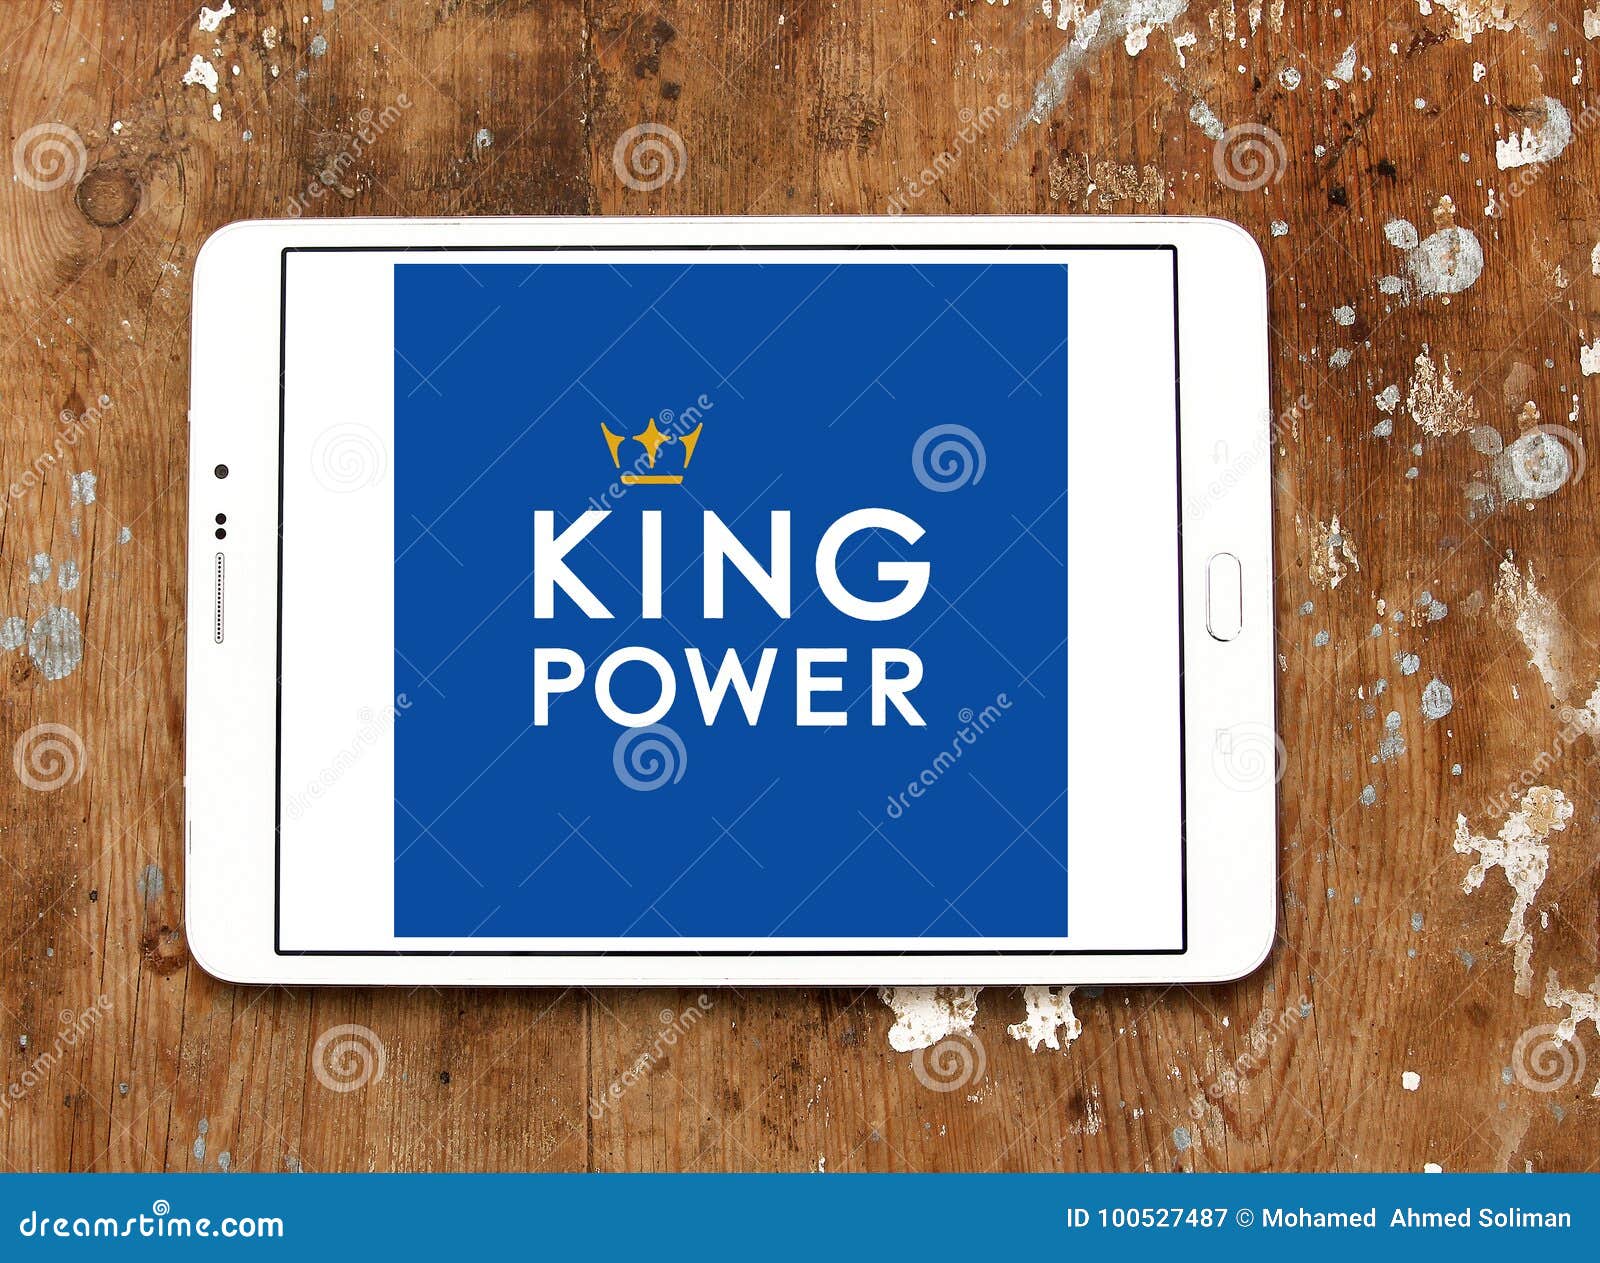 Кинг повер. Спонсор King Power. King Power logo. King Power International Group. King Power PNG.